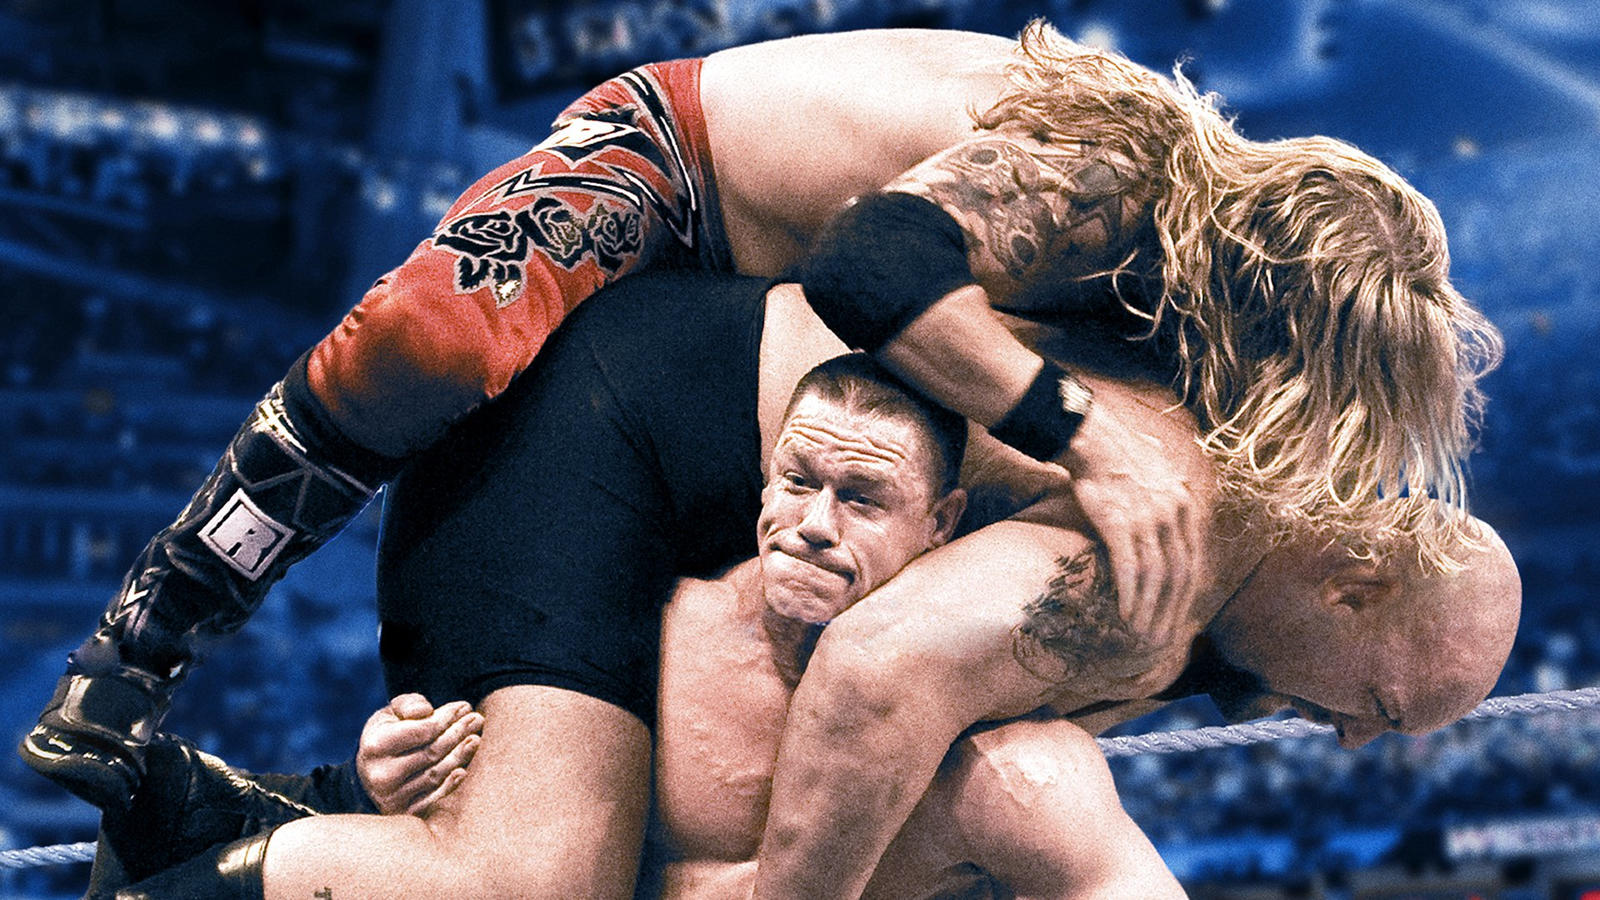 ТОП-10 лучших моментов Джона Сины на WrestleMania по версии WWE